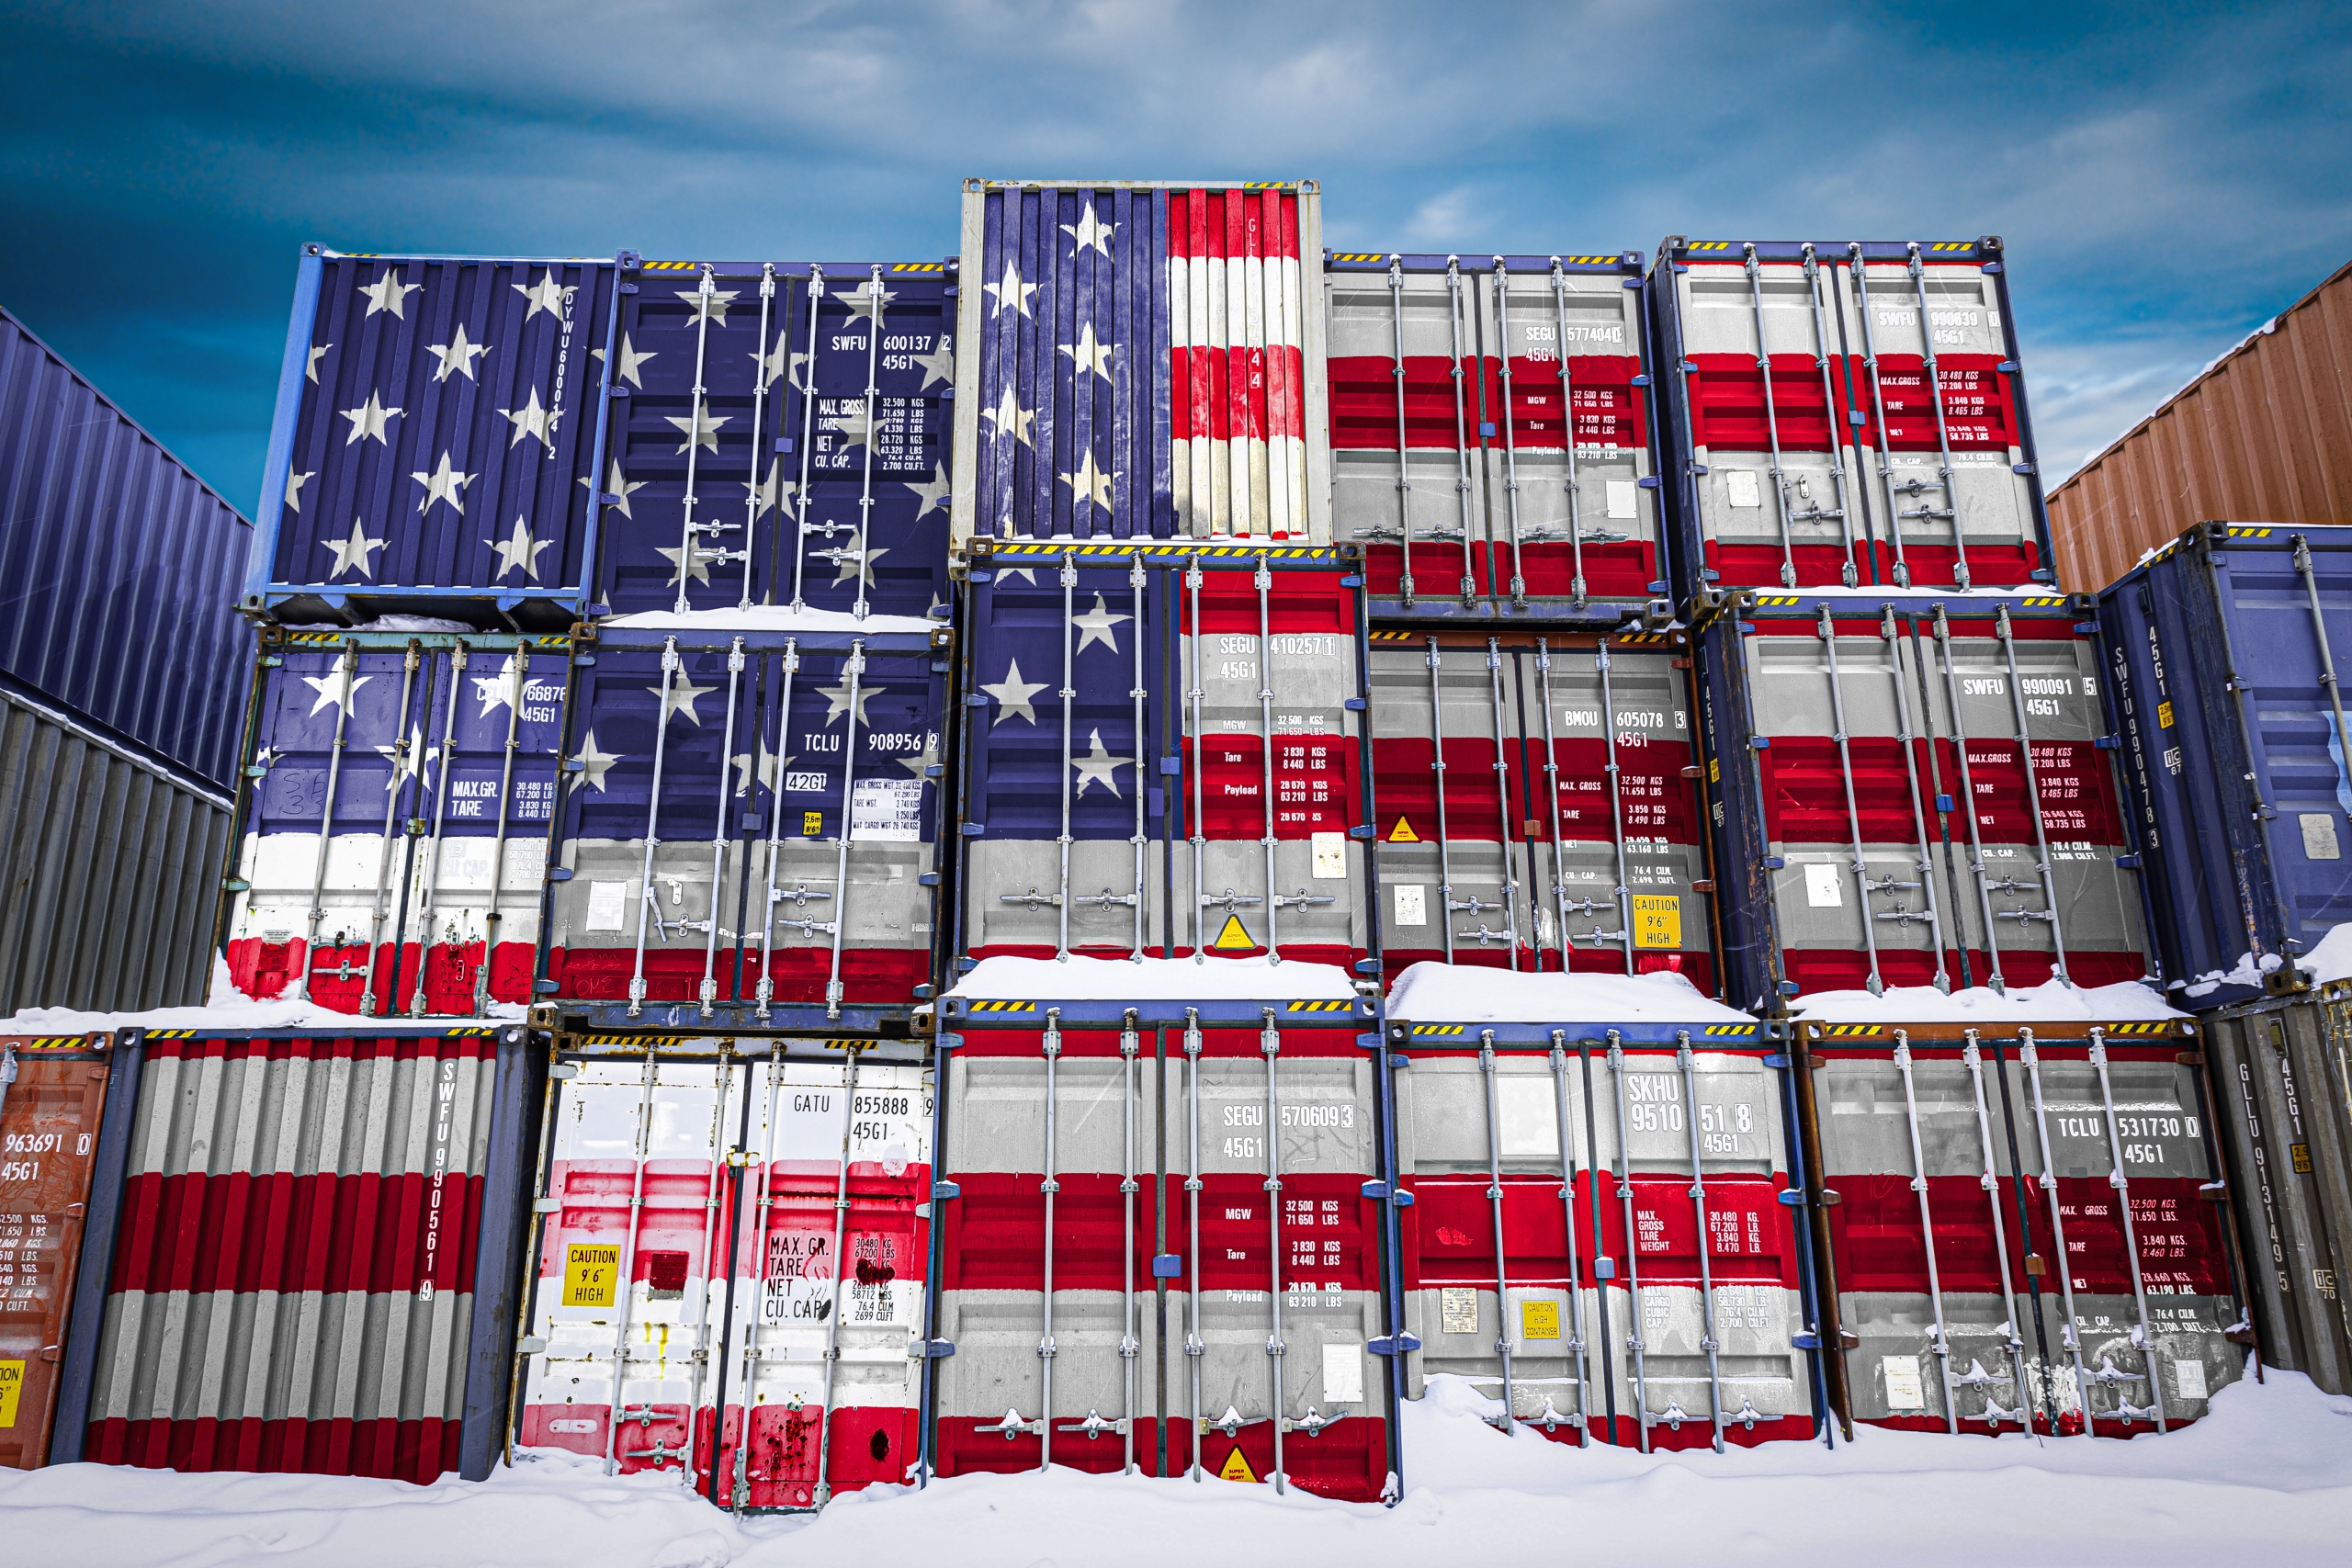 Esportare macchinari all'estero - le regole per gli Stati Uniti - Manuale Efficace